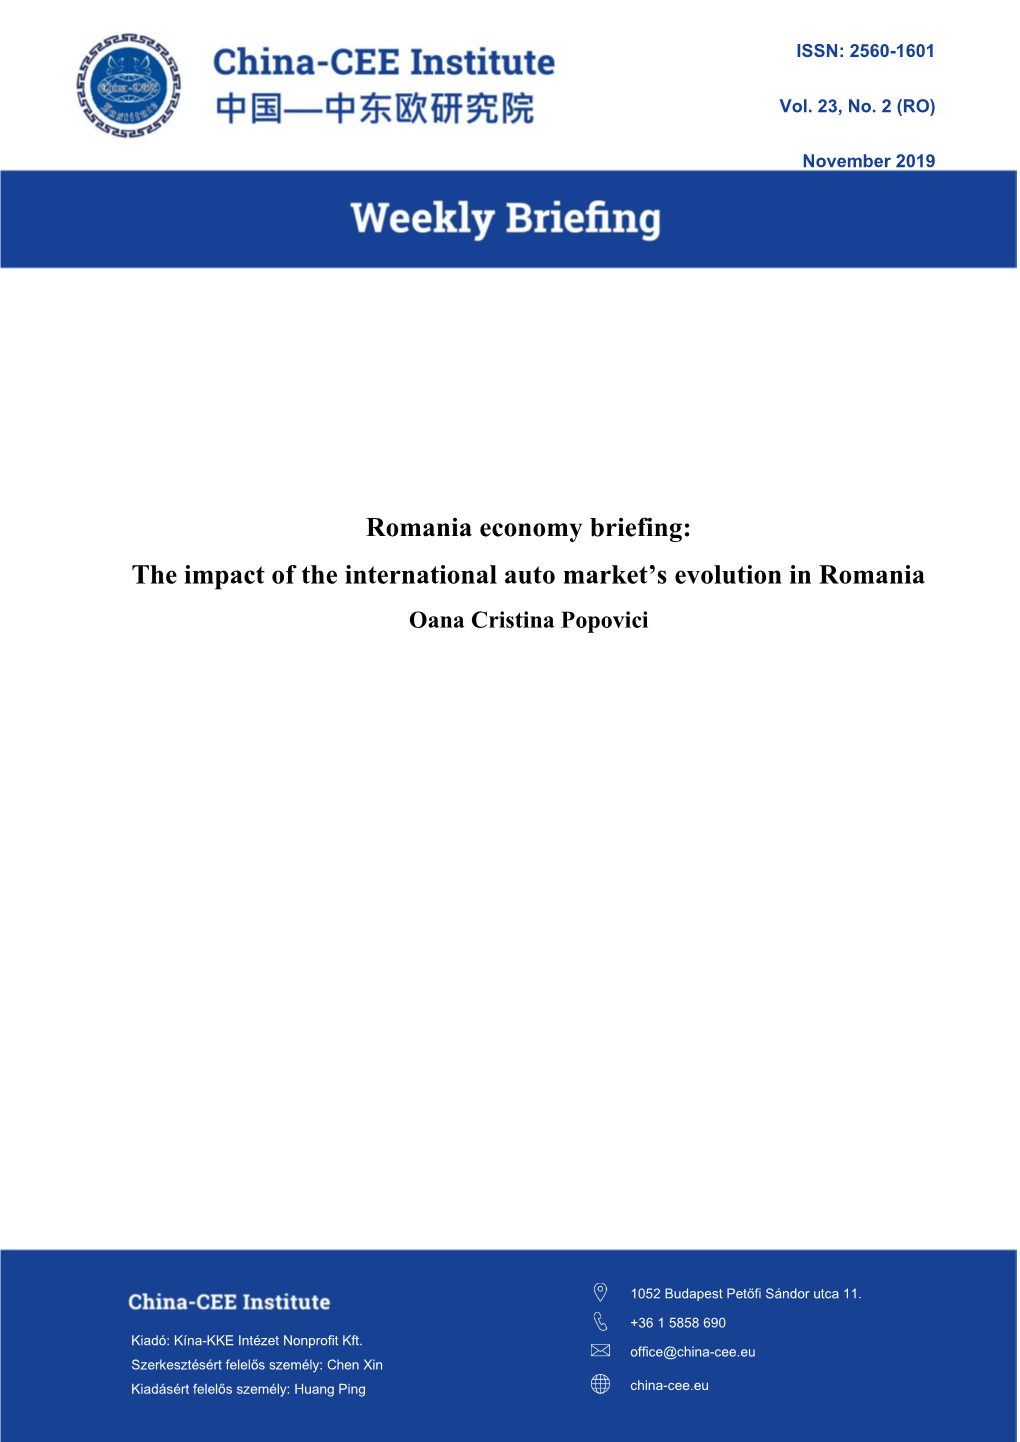 Romania Economy Briefing: the Impact of the International Auto Market’S Evolution in Romania Oana Cristina Popovici